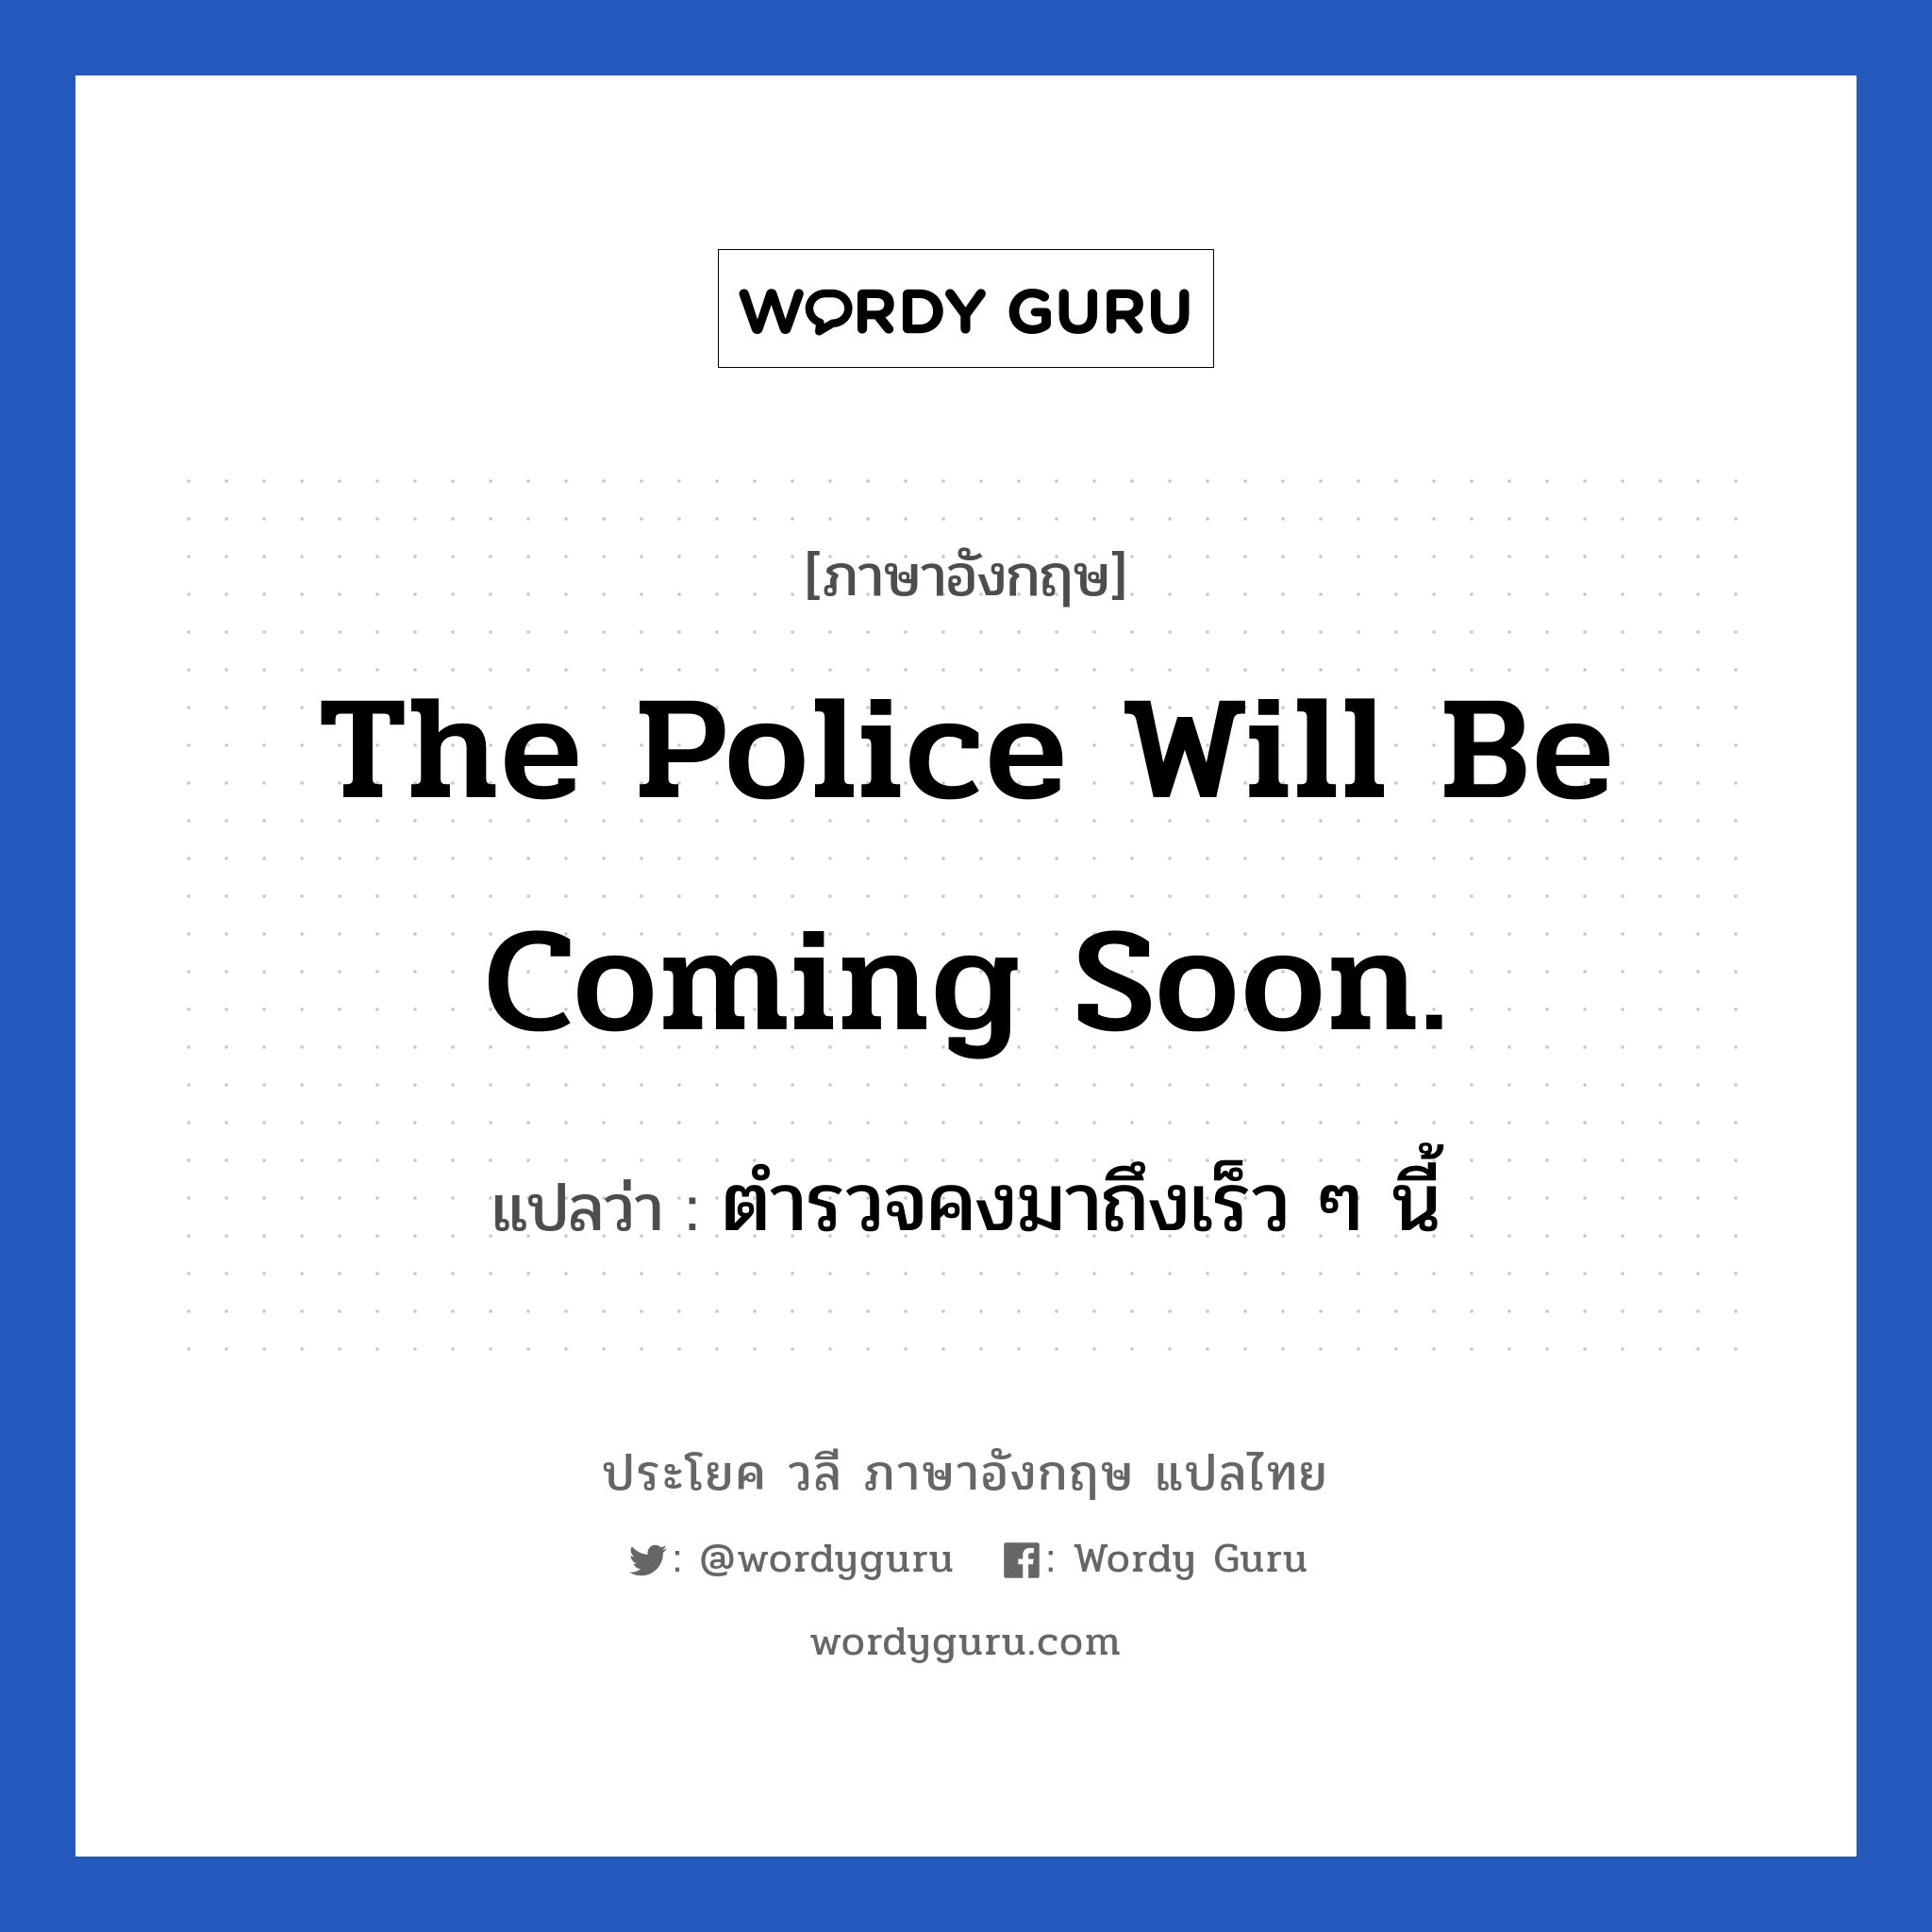 The police will be coming soon. แปลว่า?, วลีภาษาอังกฤษ The police will be coming soon. แปลว่า ตำรวจคงมาถึงเร็ว ๆ นี้